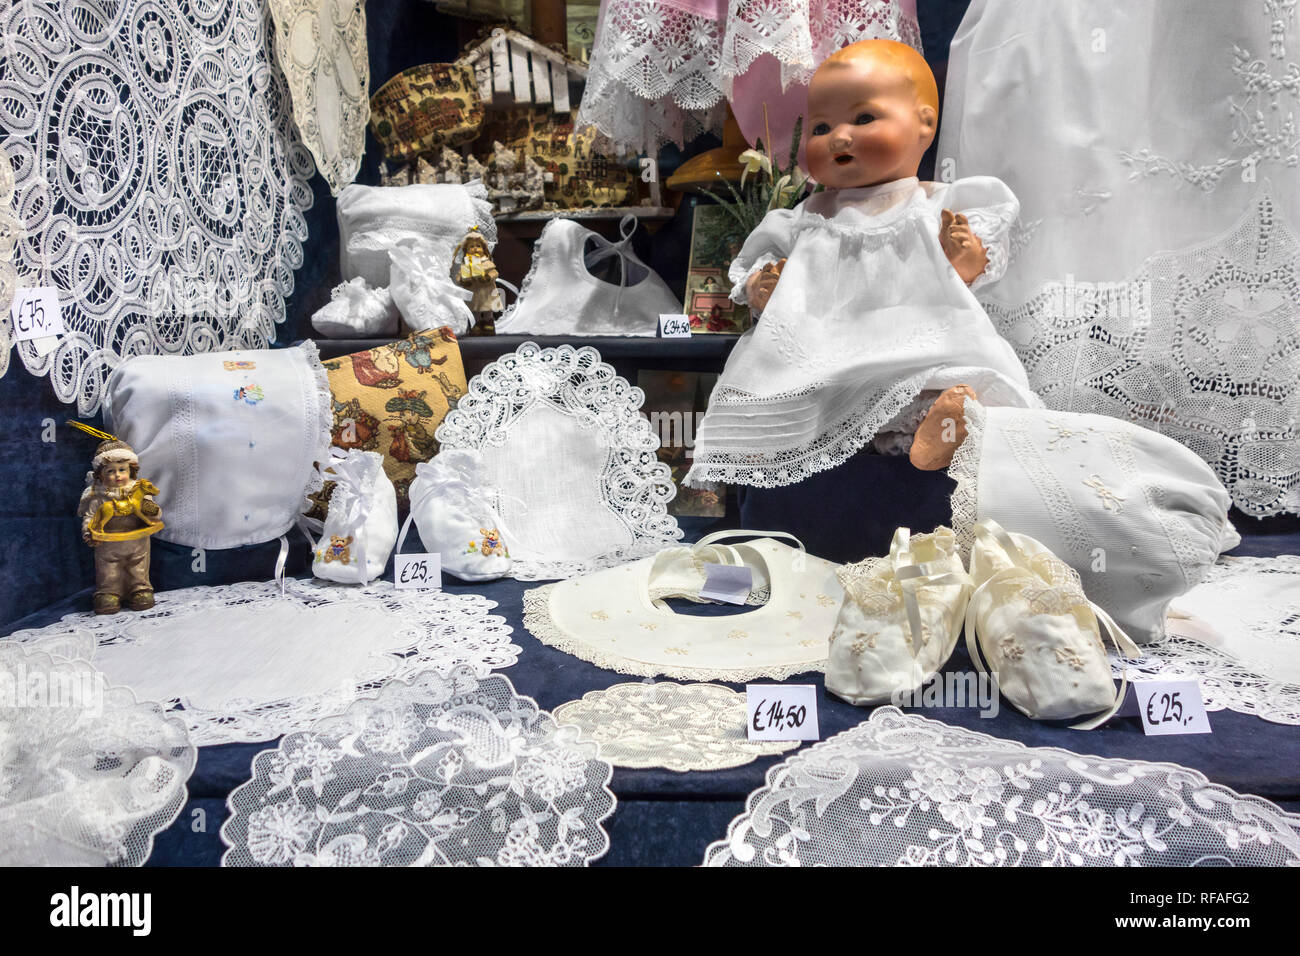 Bianco belga il merletto a tombolo in vendita come souvenir turistici nella vetrina del negozio di articoli da regalo/turistica store nella città di Bruges, Fiandre Occidentali, Belgio Foto Stock